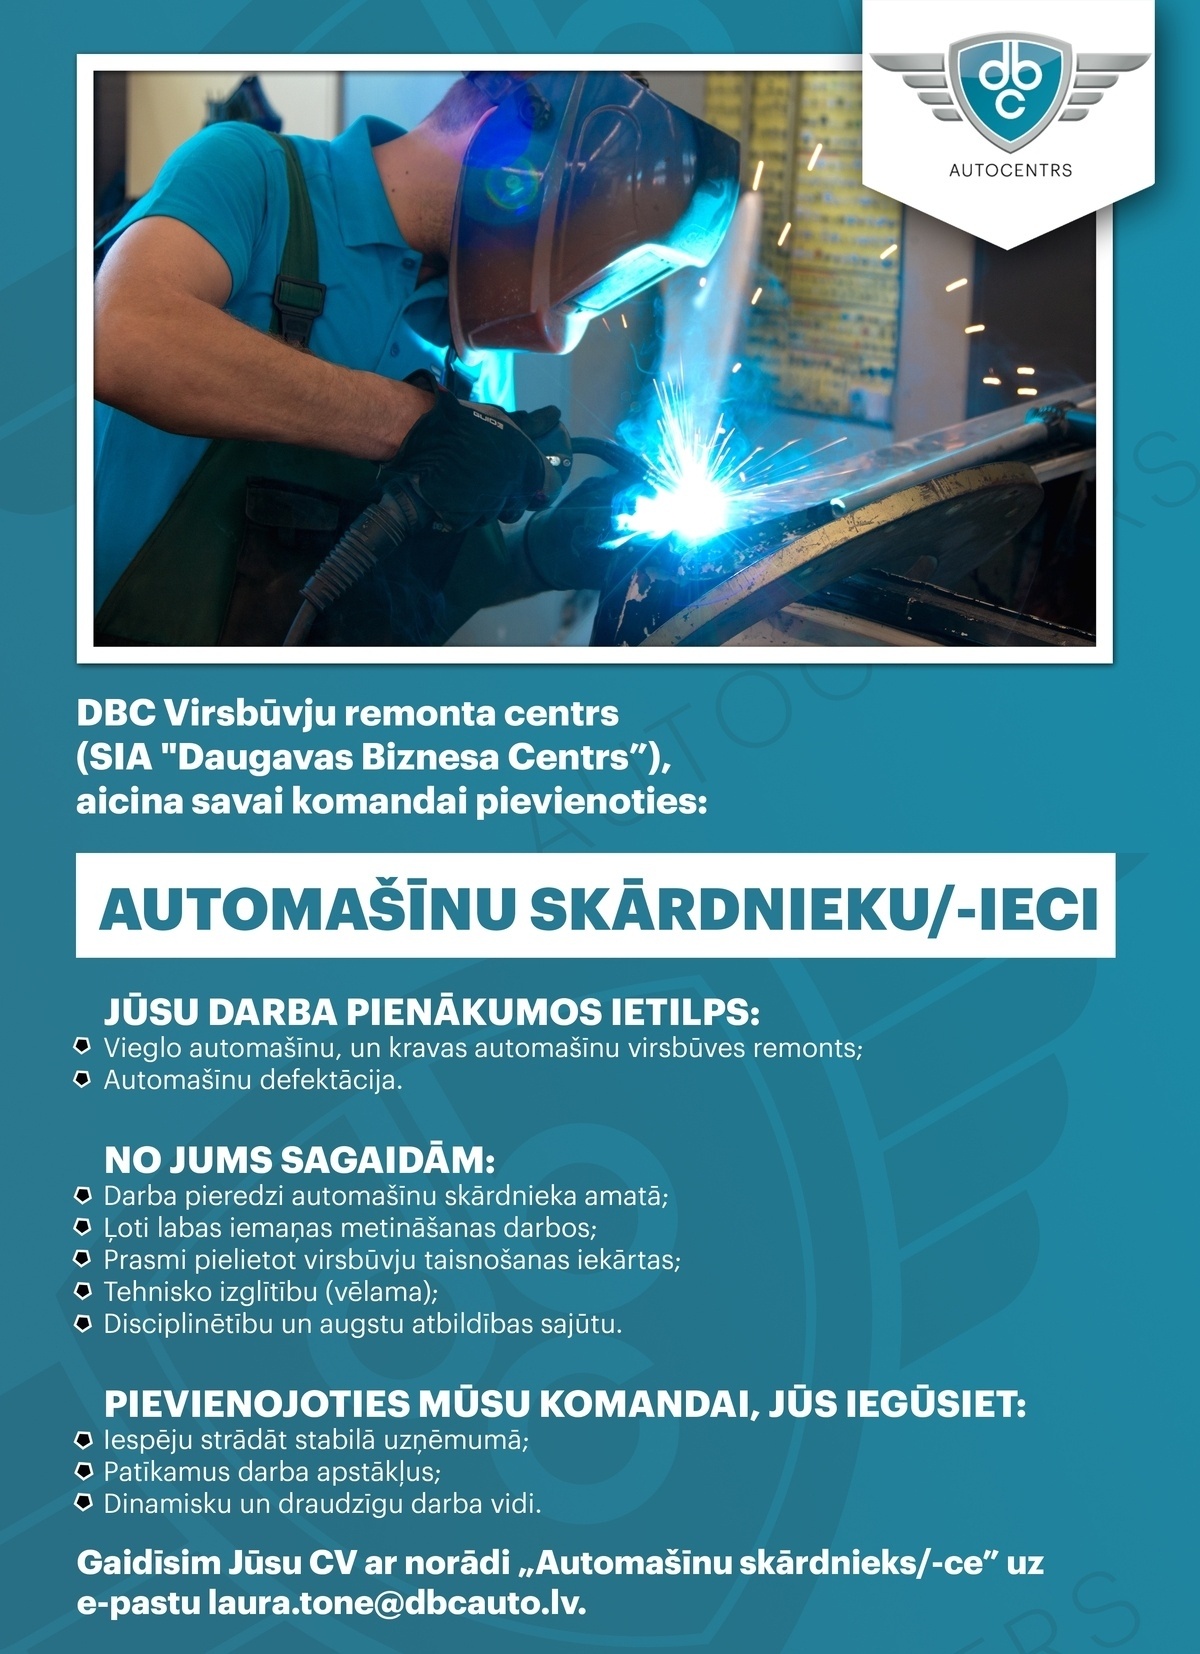 DBC autocentrs (SIA "Daugavas Biznesa Centrs) vieglo auto serviss Automašīnu skārdnieku/-ieci